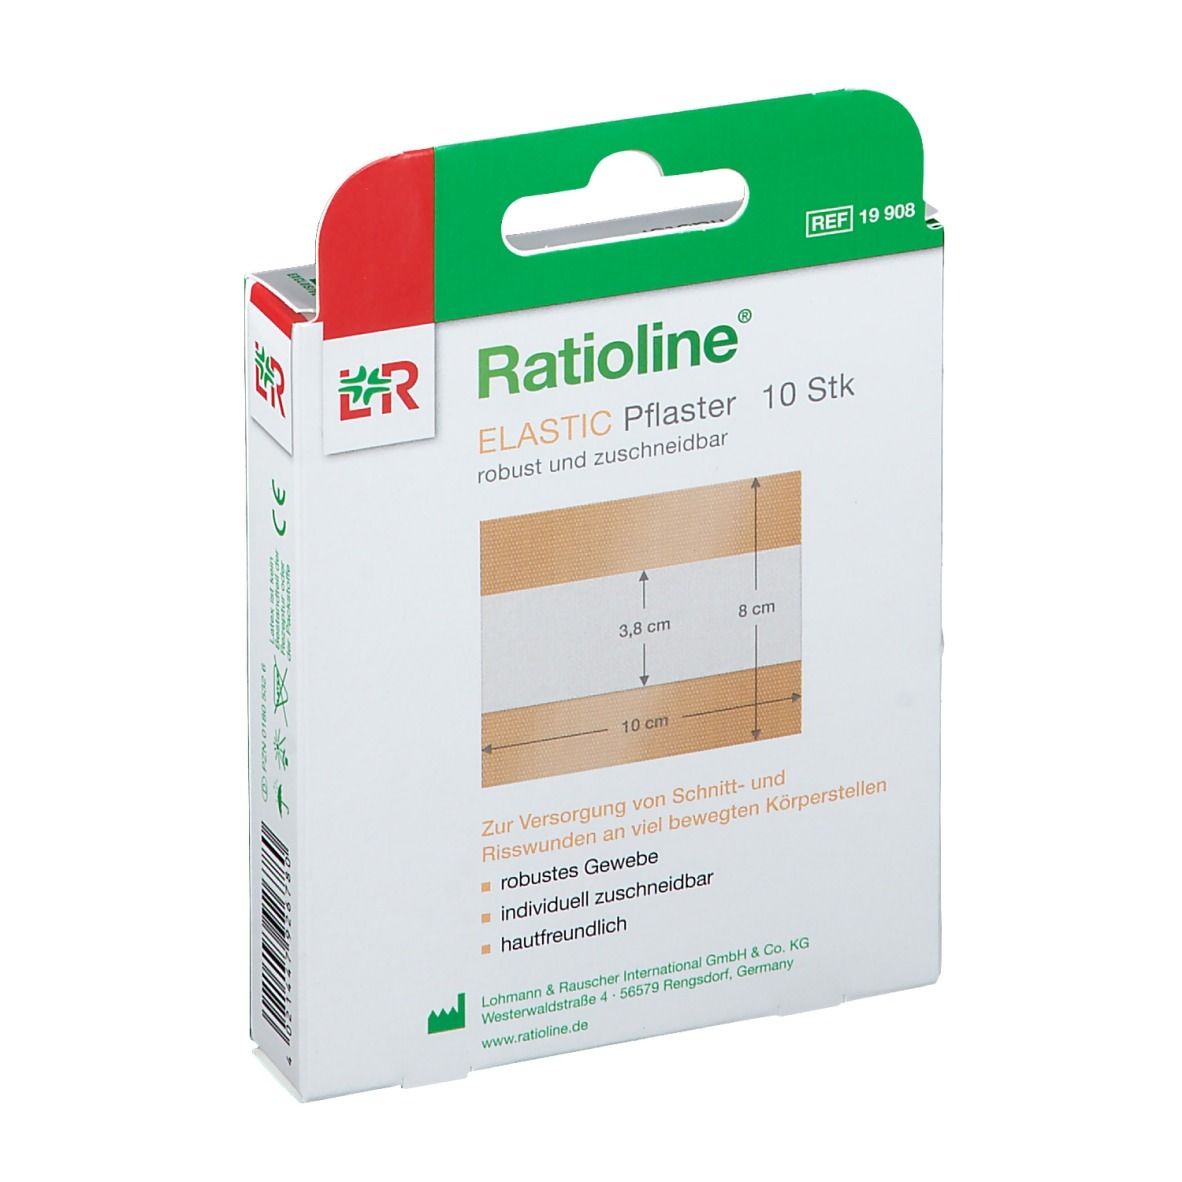 Ratioline® Elastic Pflaster 8 x 10 cm